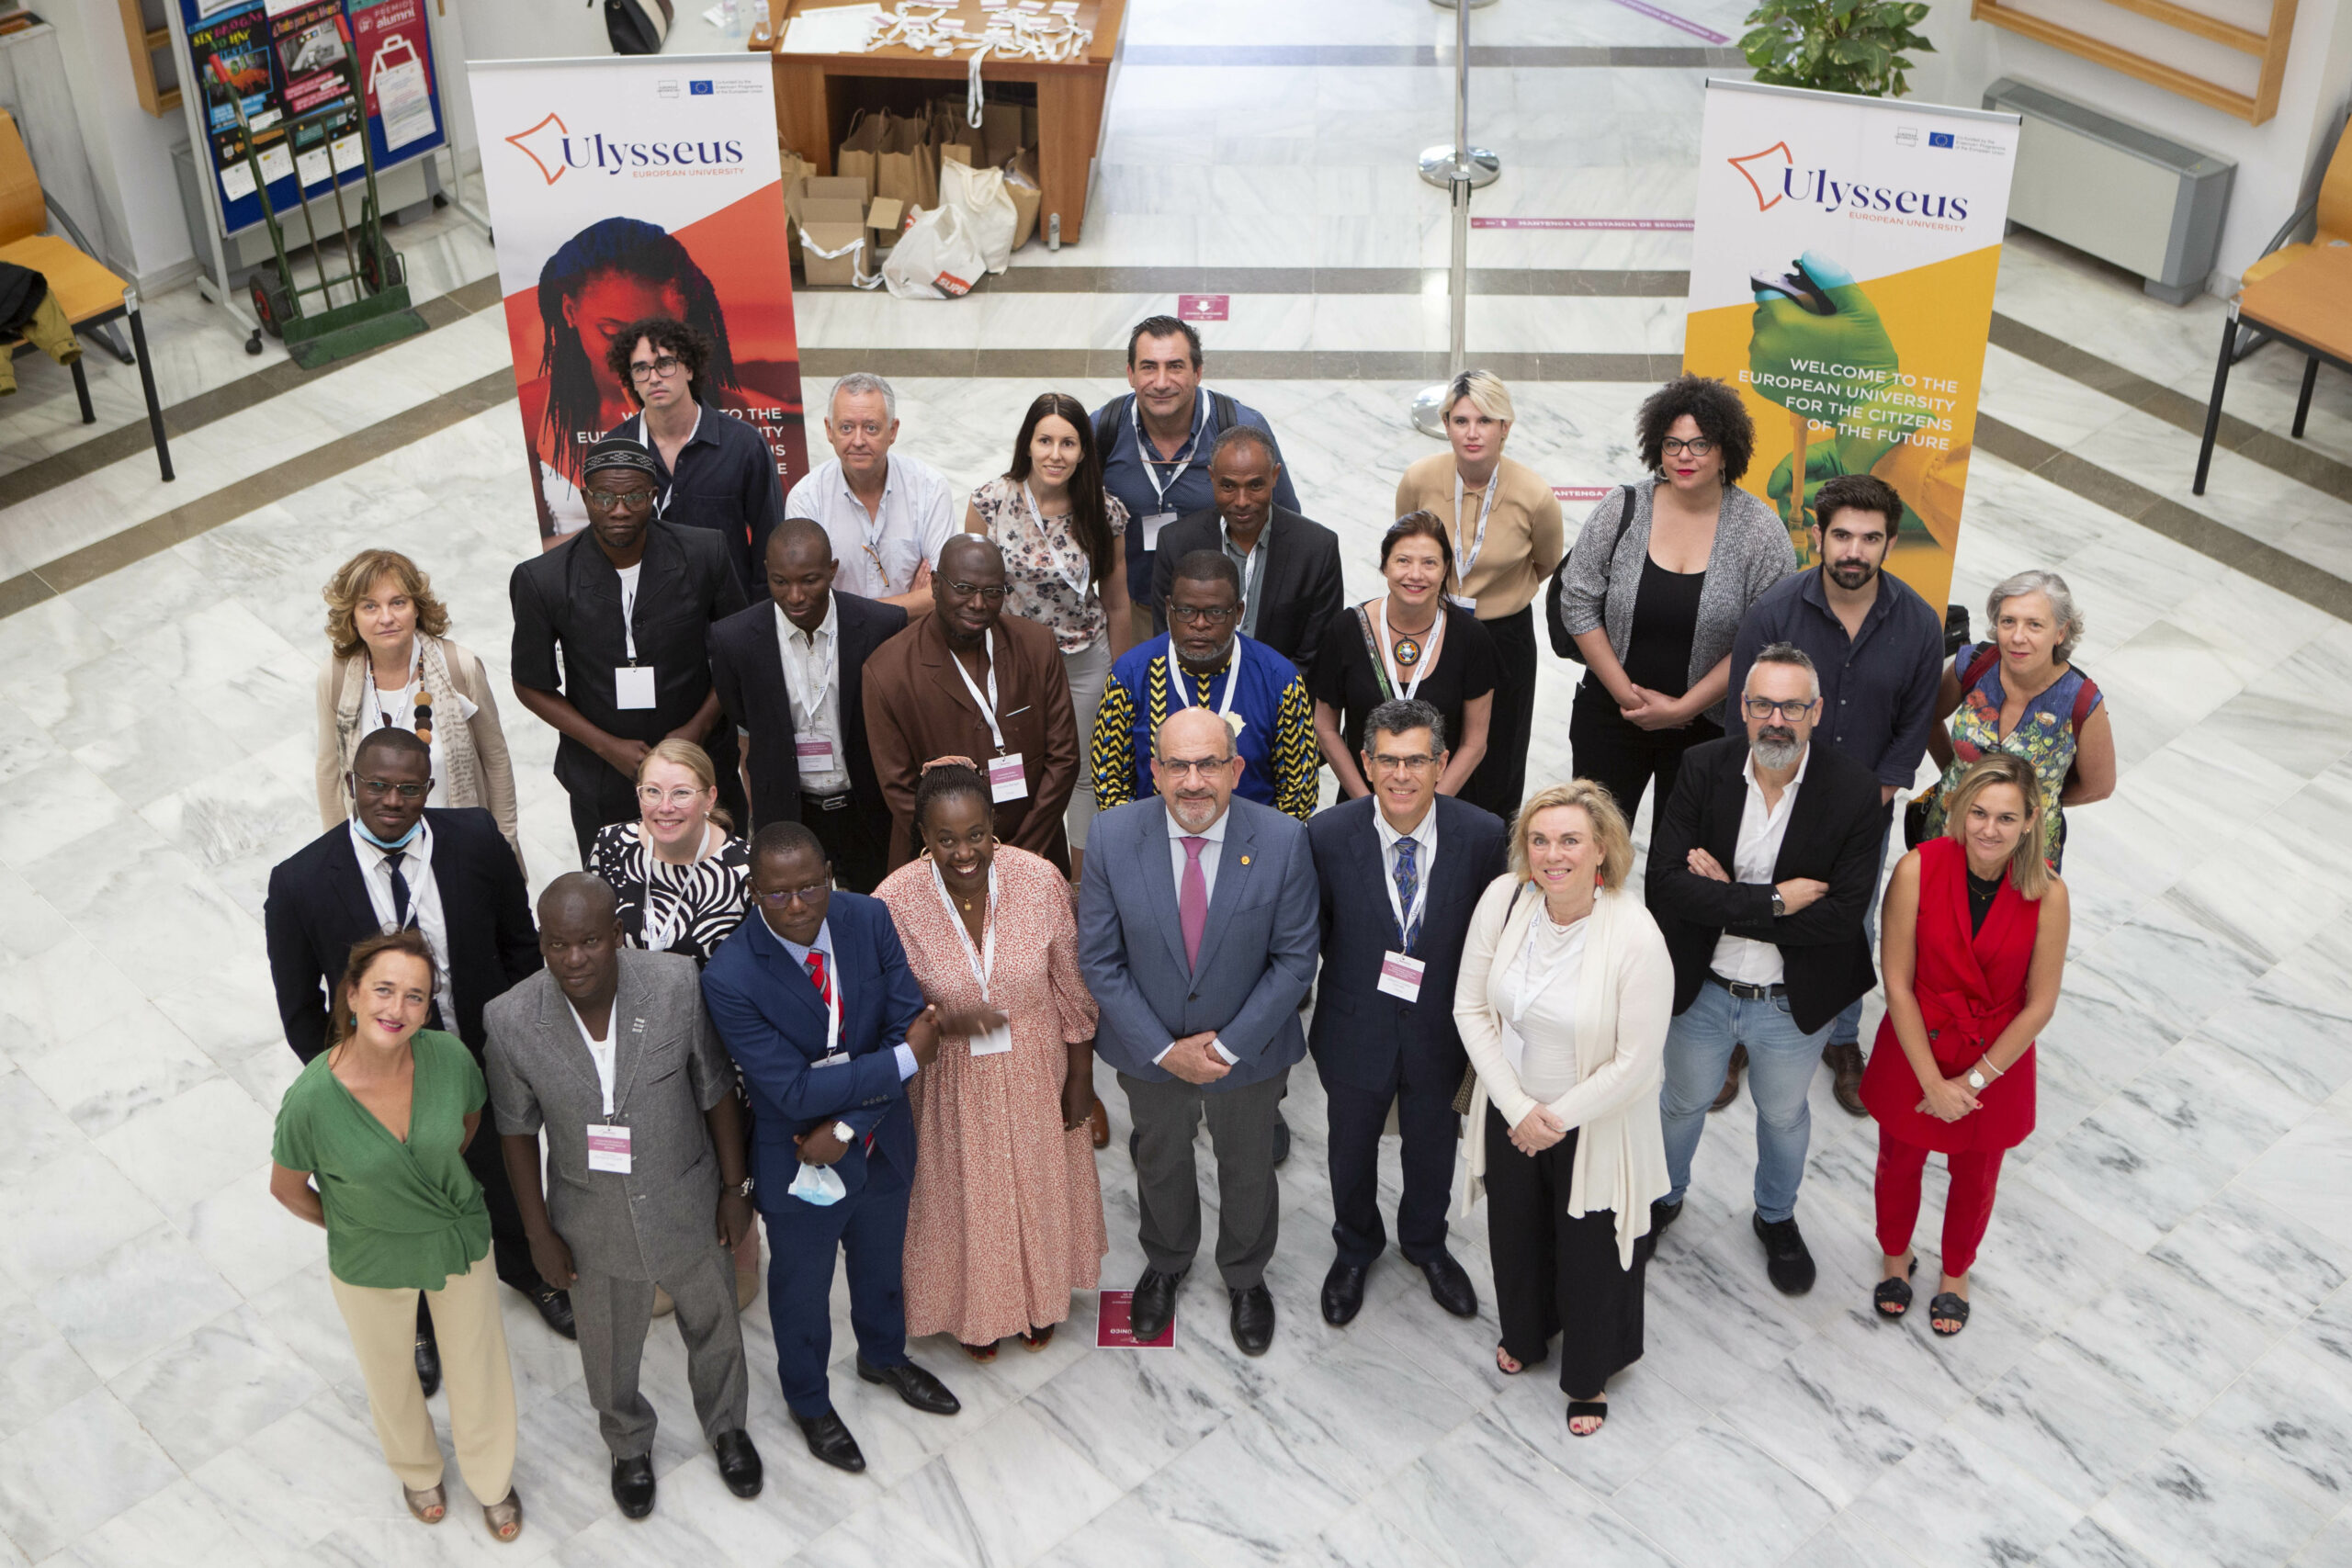 La rete NEEMA prende forma a Siviglia: Ulysseus riunisce insieme i componenti del consorzio, le università africane e altre università europee per sviluppare un nuovo progetto